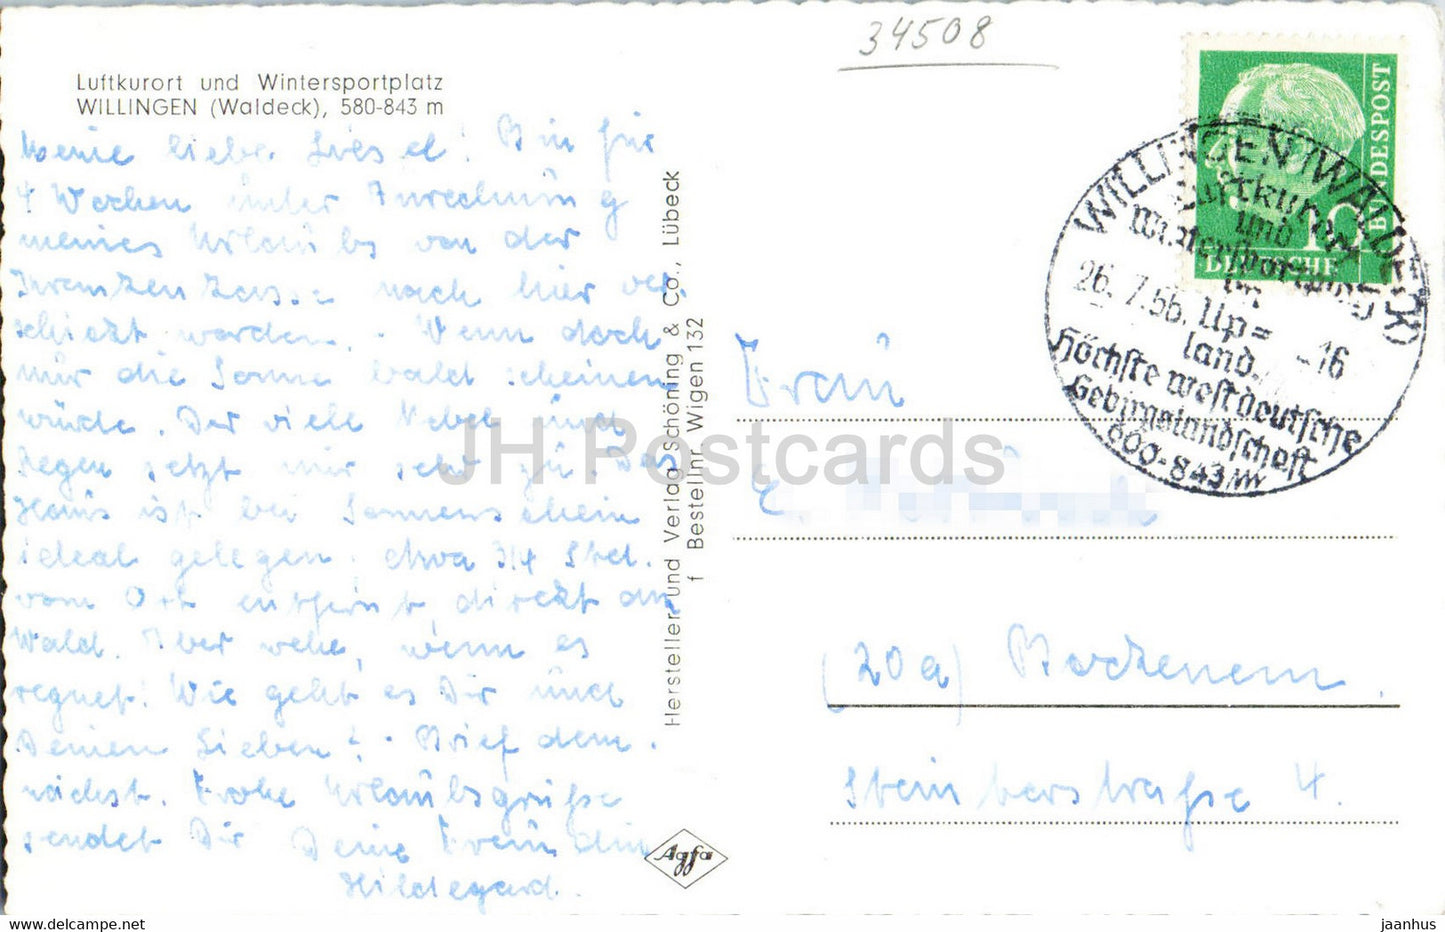 Willingen - Waldeck - 580 843 m - carte postale ancienne - 1956 - Allemagne - utilisé